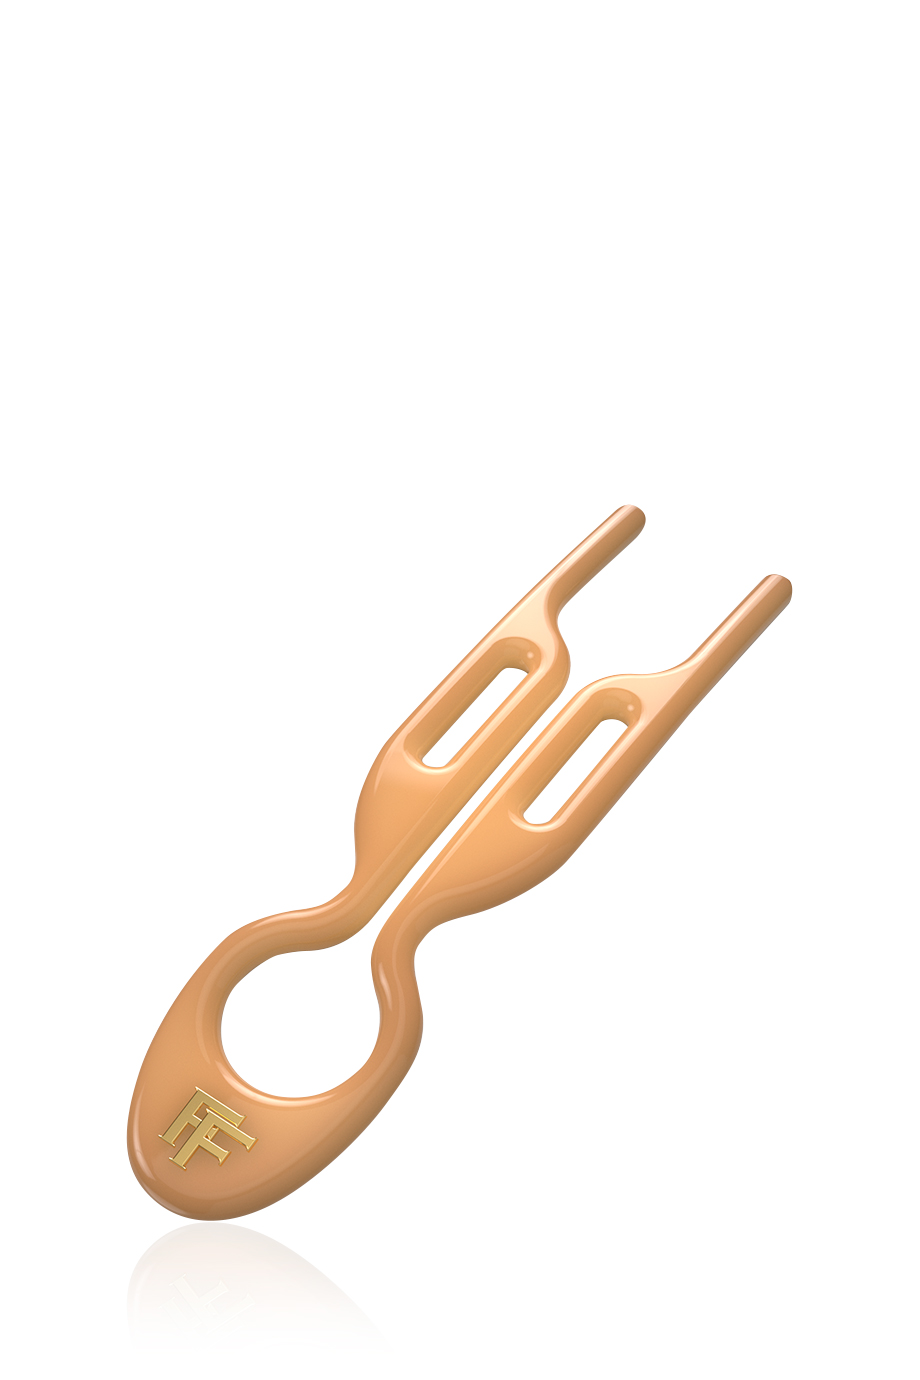 Шпильки No1 Hairpin Карамельного цвета (набор из 3 шпилек) в интернет-магазине Authentica.love